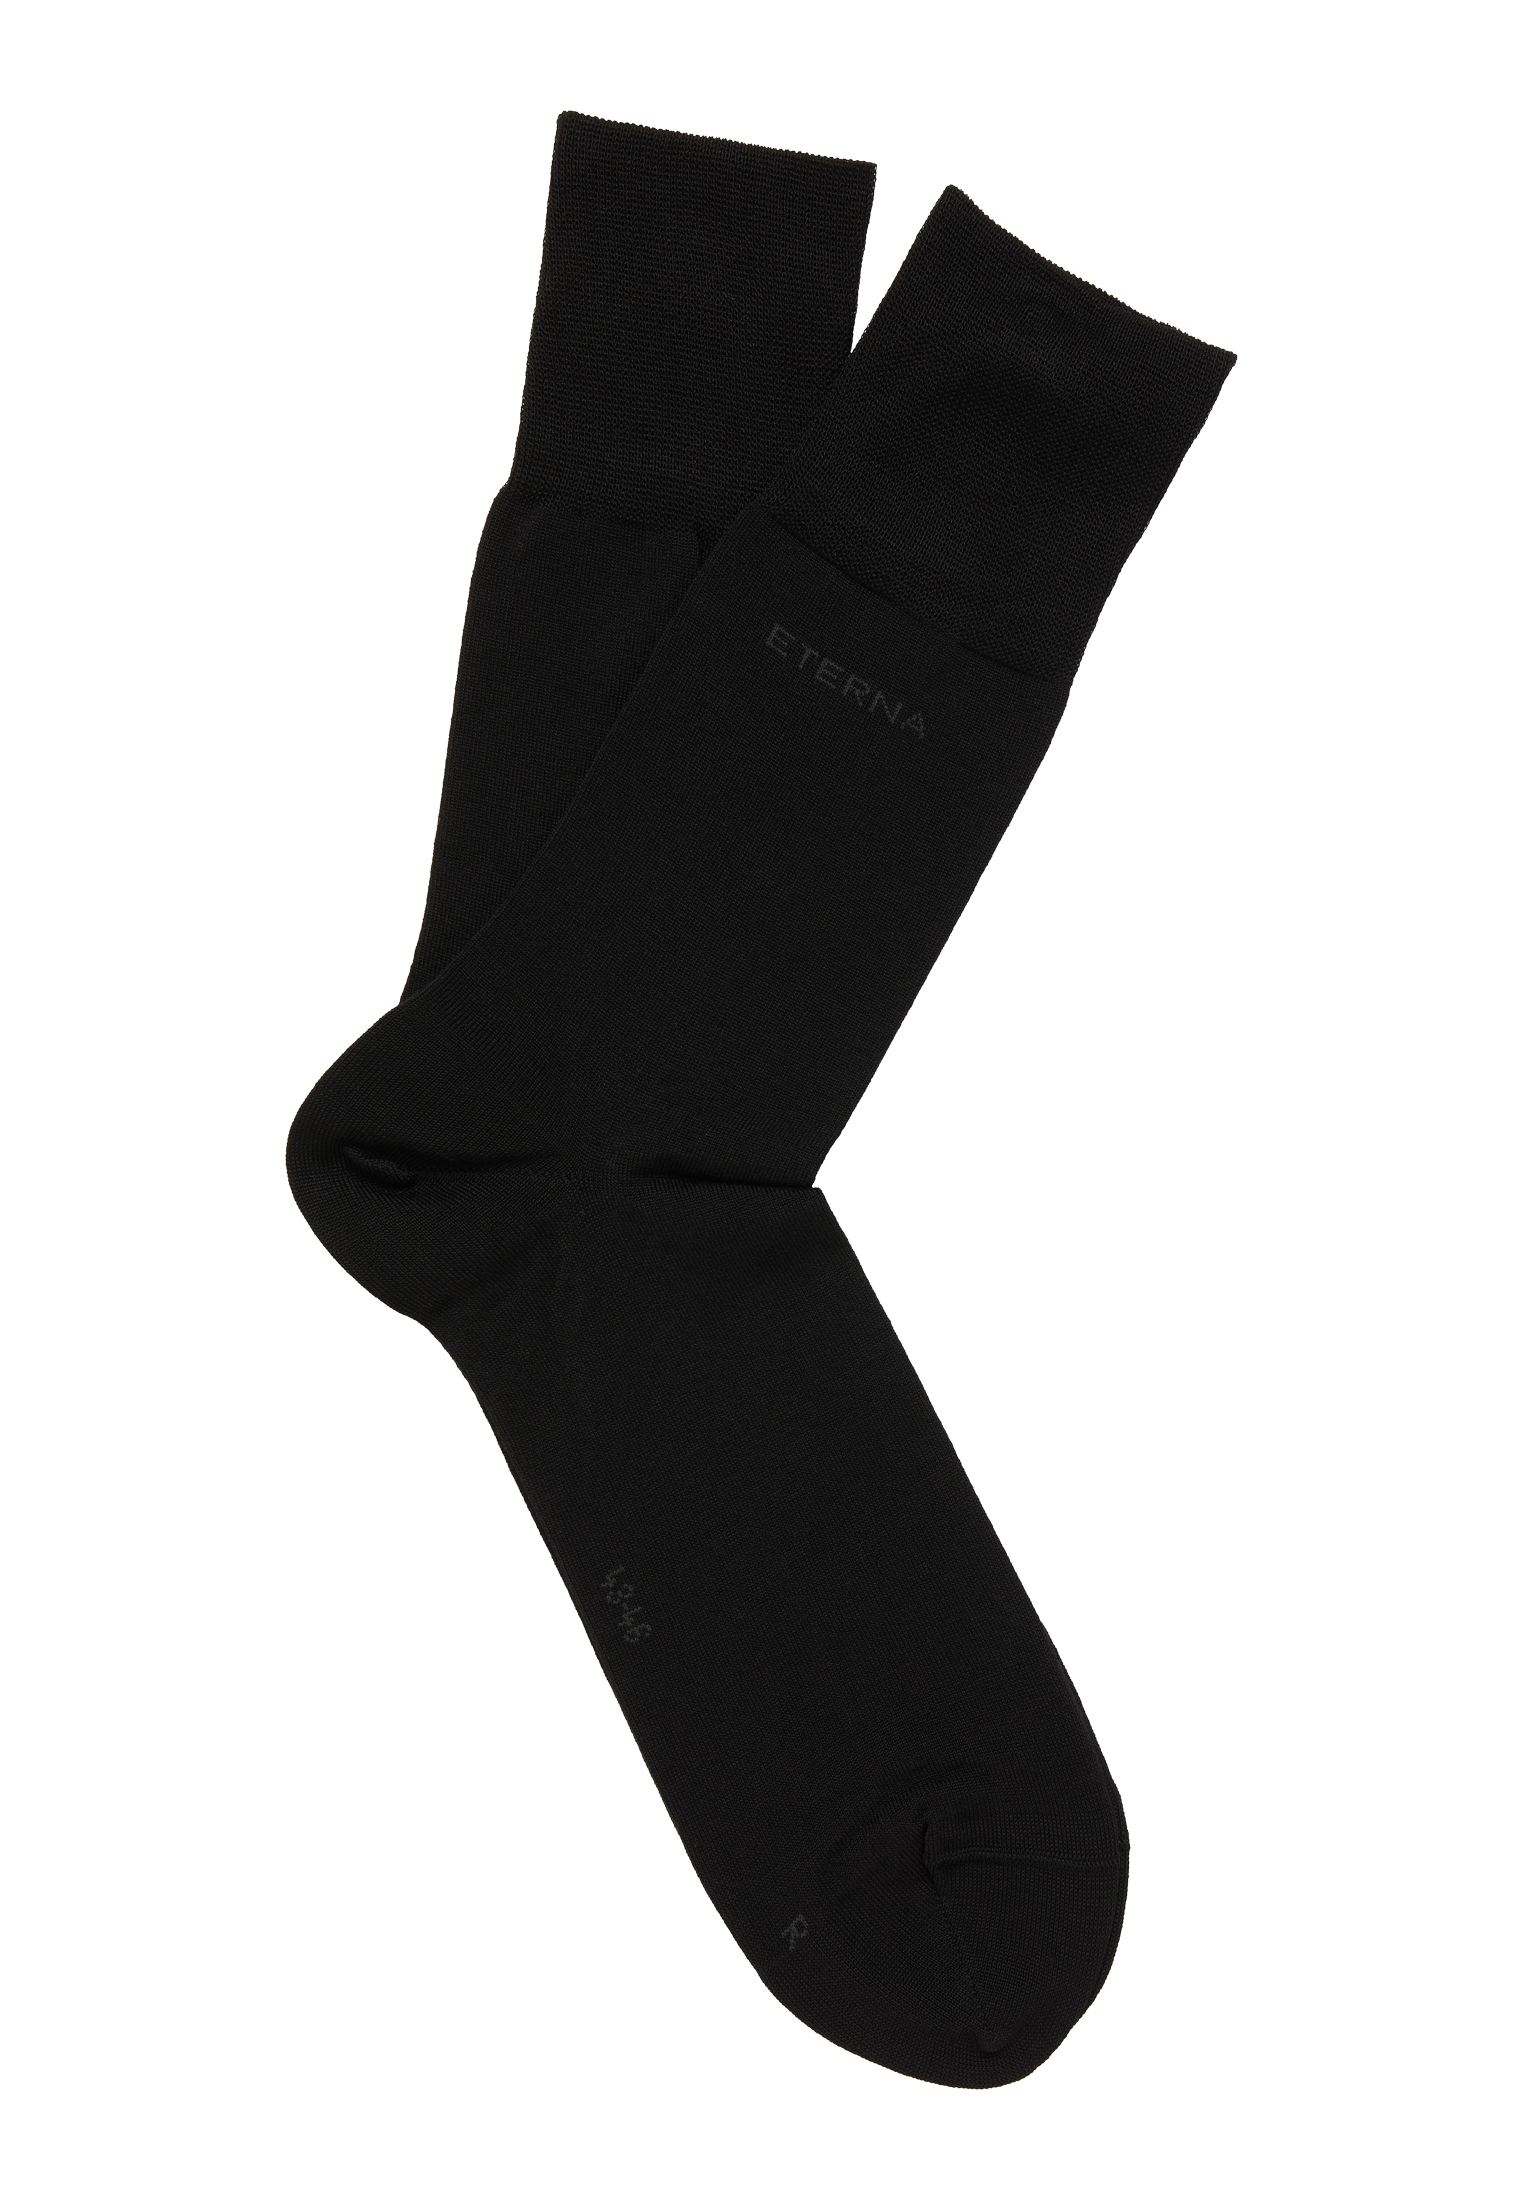 Socks in black plain